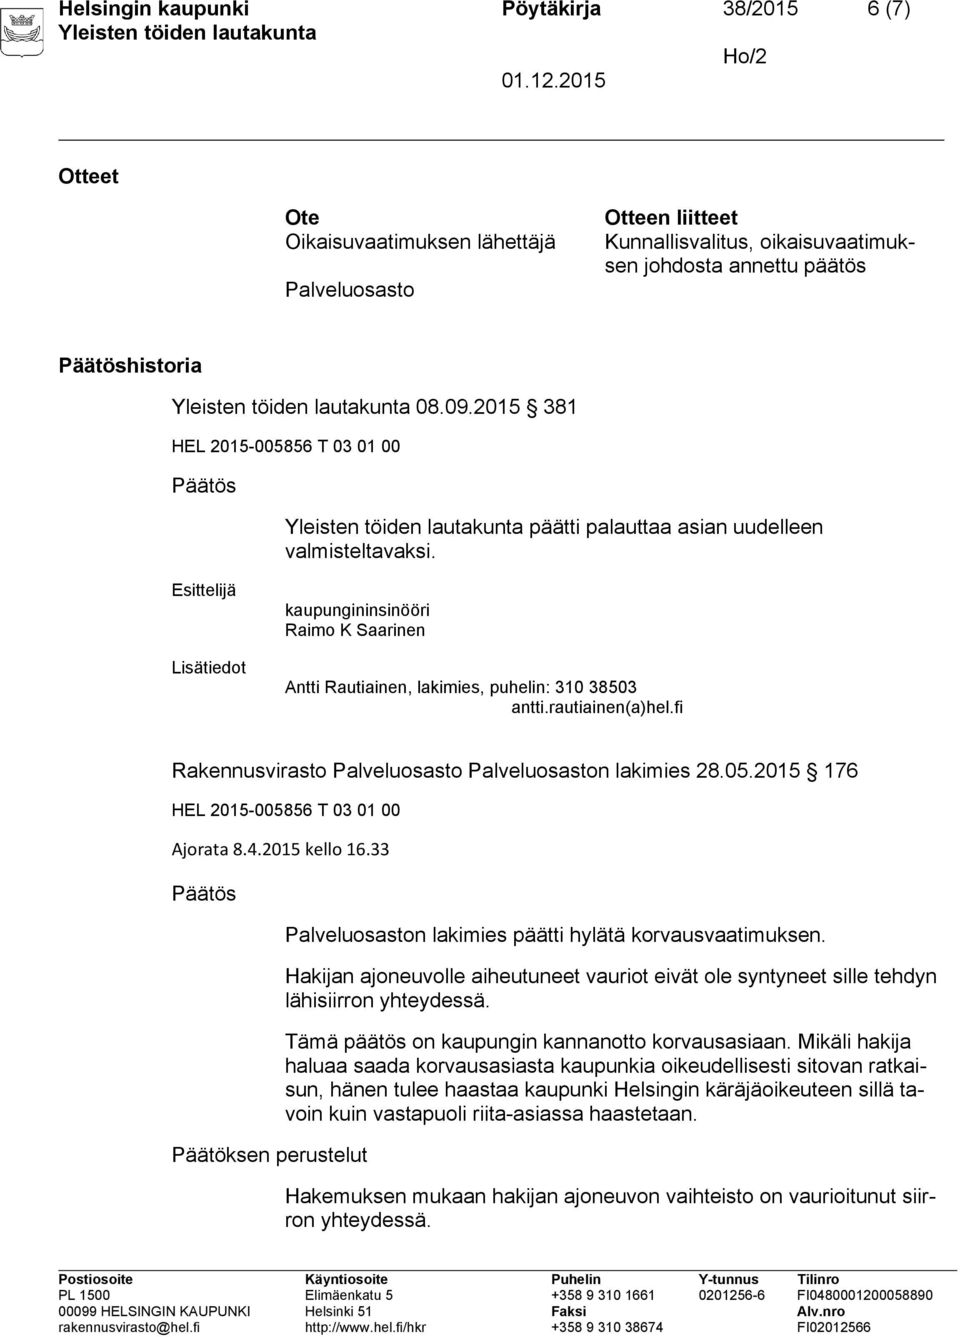 rautiainen(a)hel.fi Rakennusvirasto Palveluosasto Palveluosaston lakimies 28.05.2015 176 HEL 2015-005856 T 03 01 00 Ajorata 8.4.2015 kello 16.